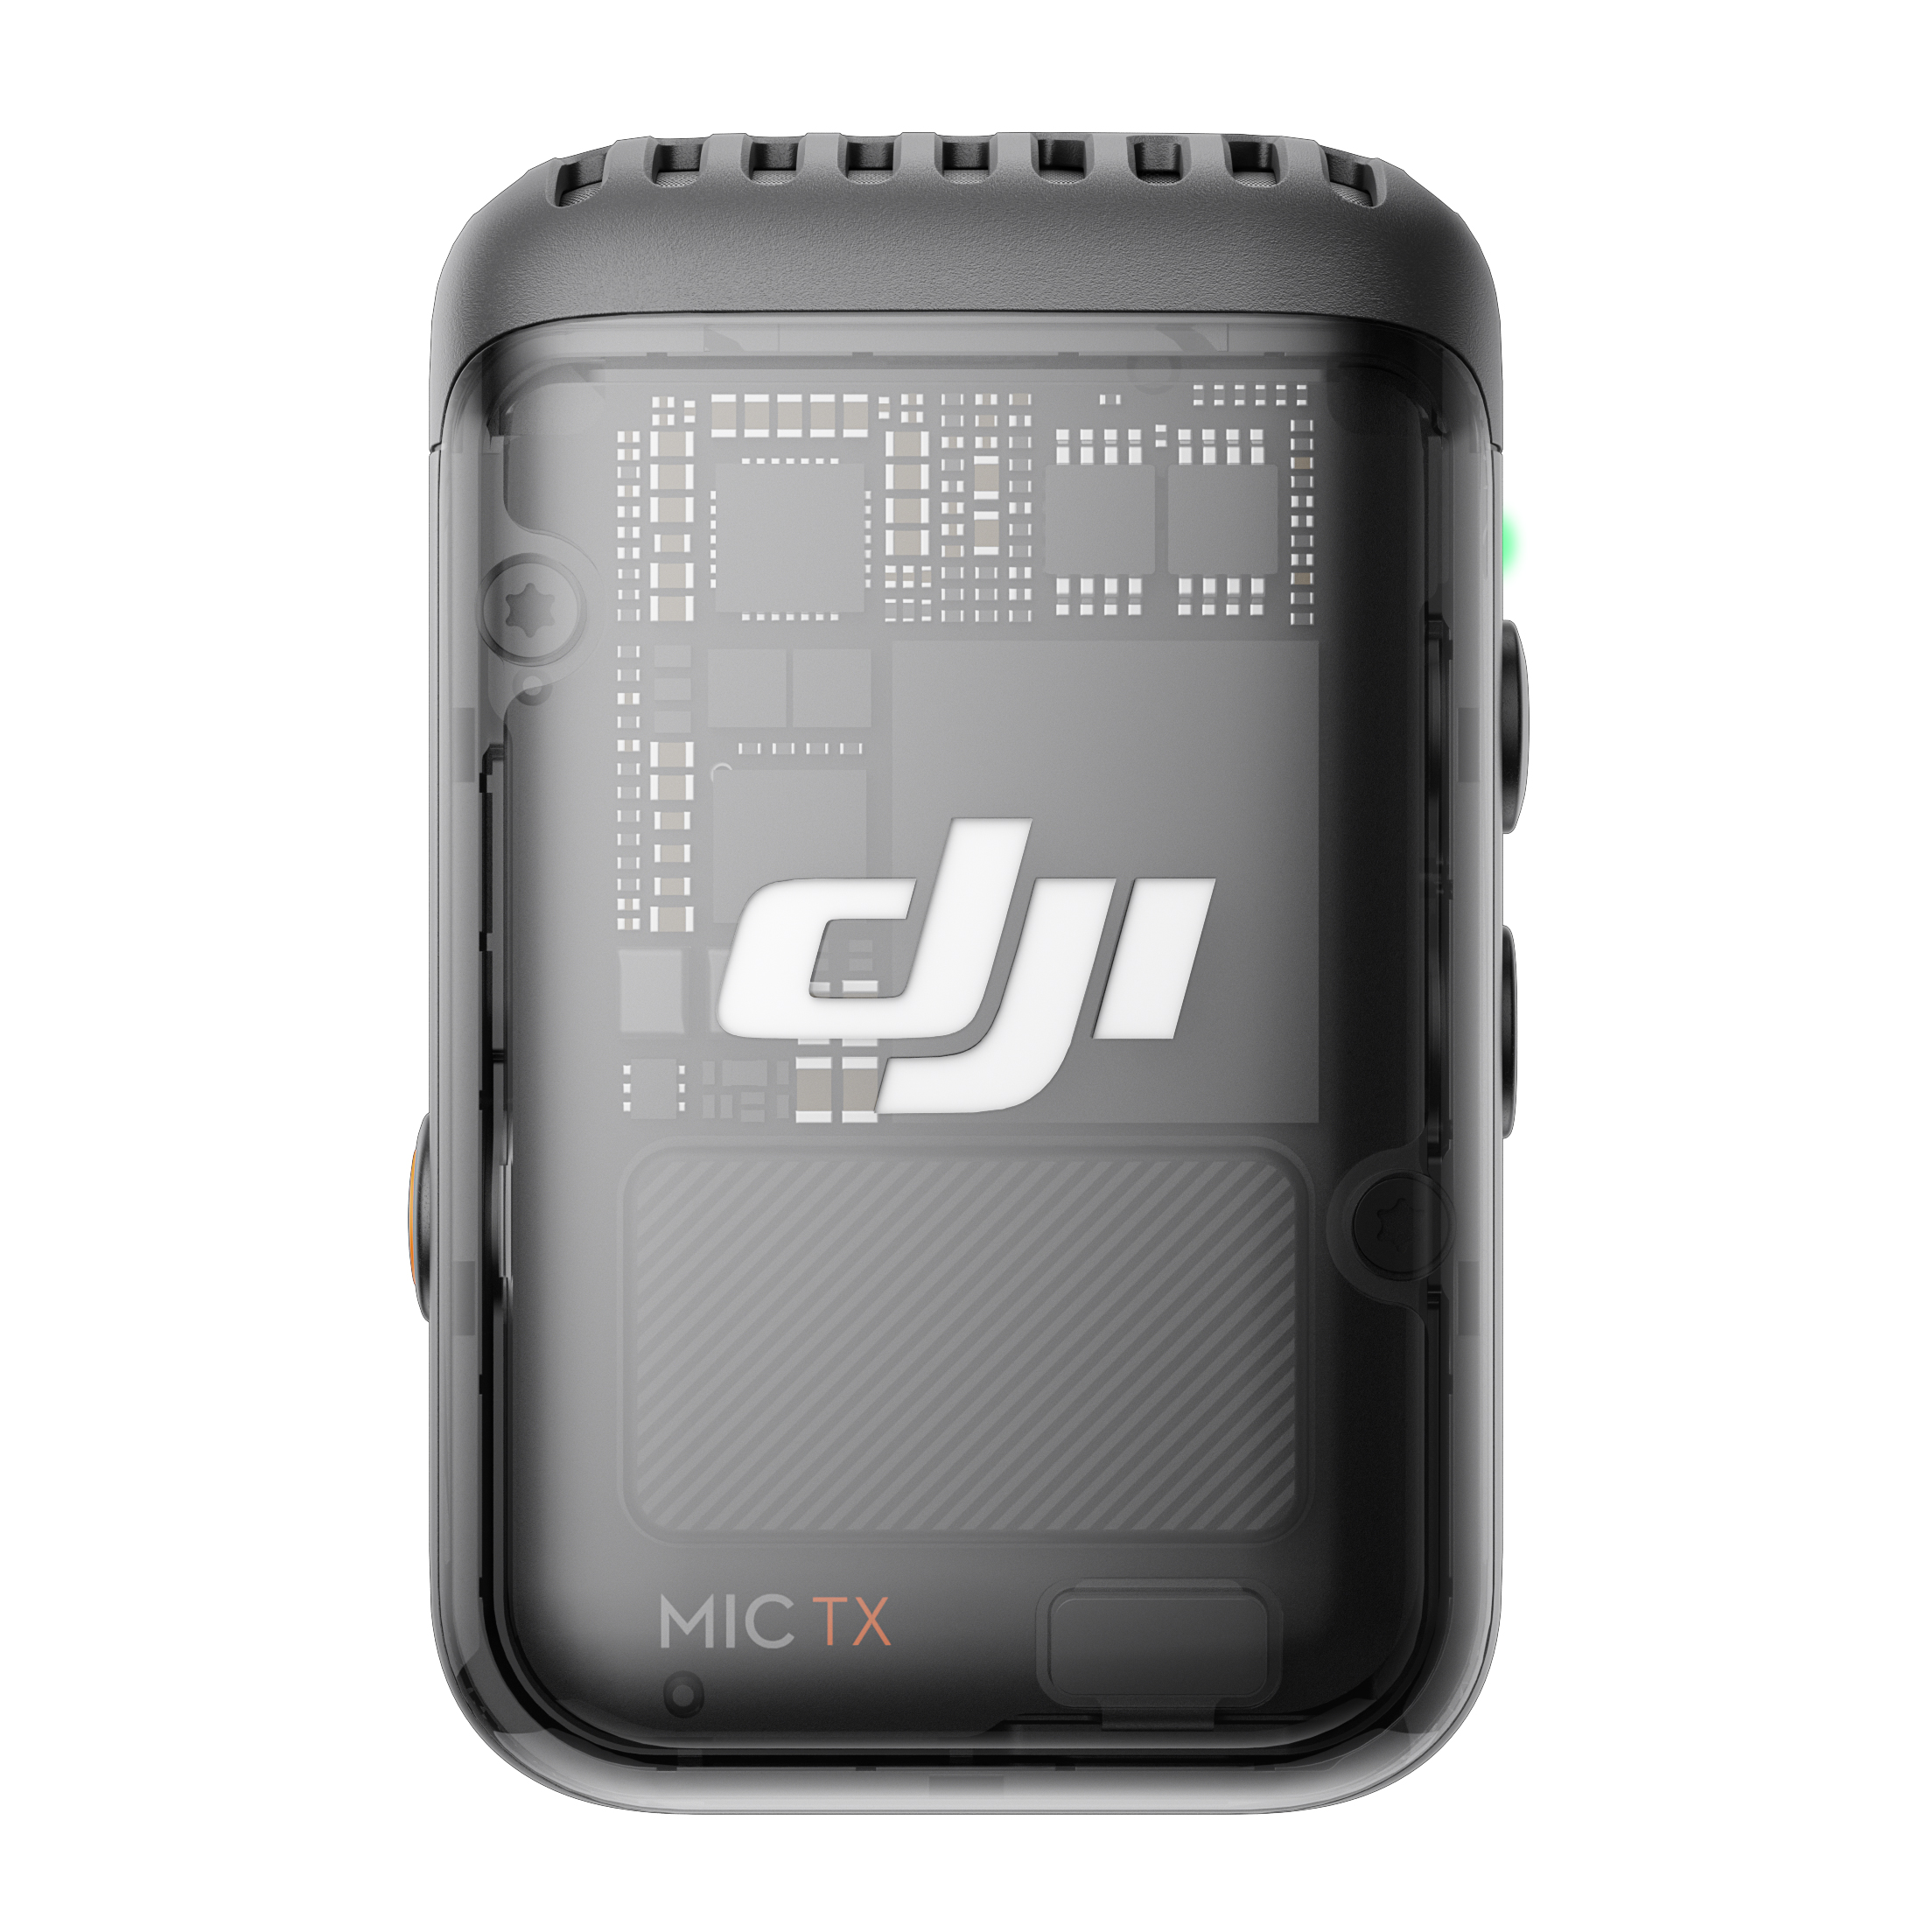 DJI Mic 2 トランスミッター(シャドーブラック)